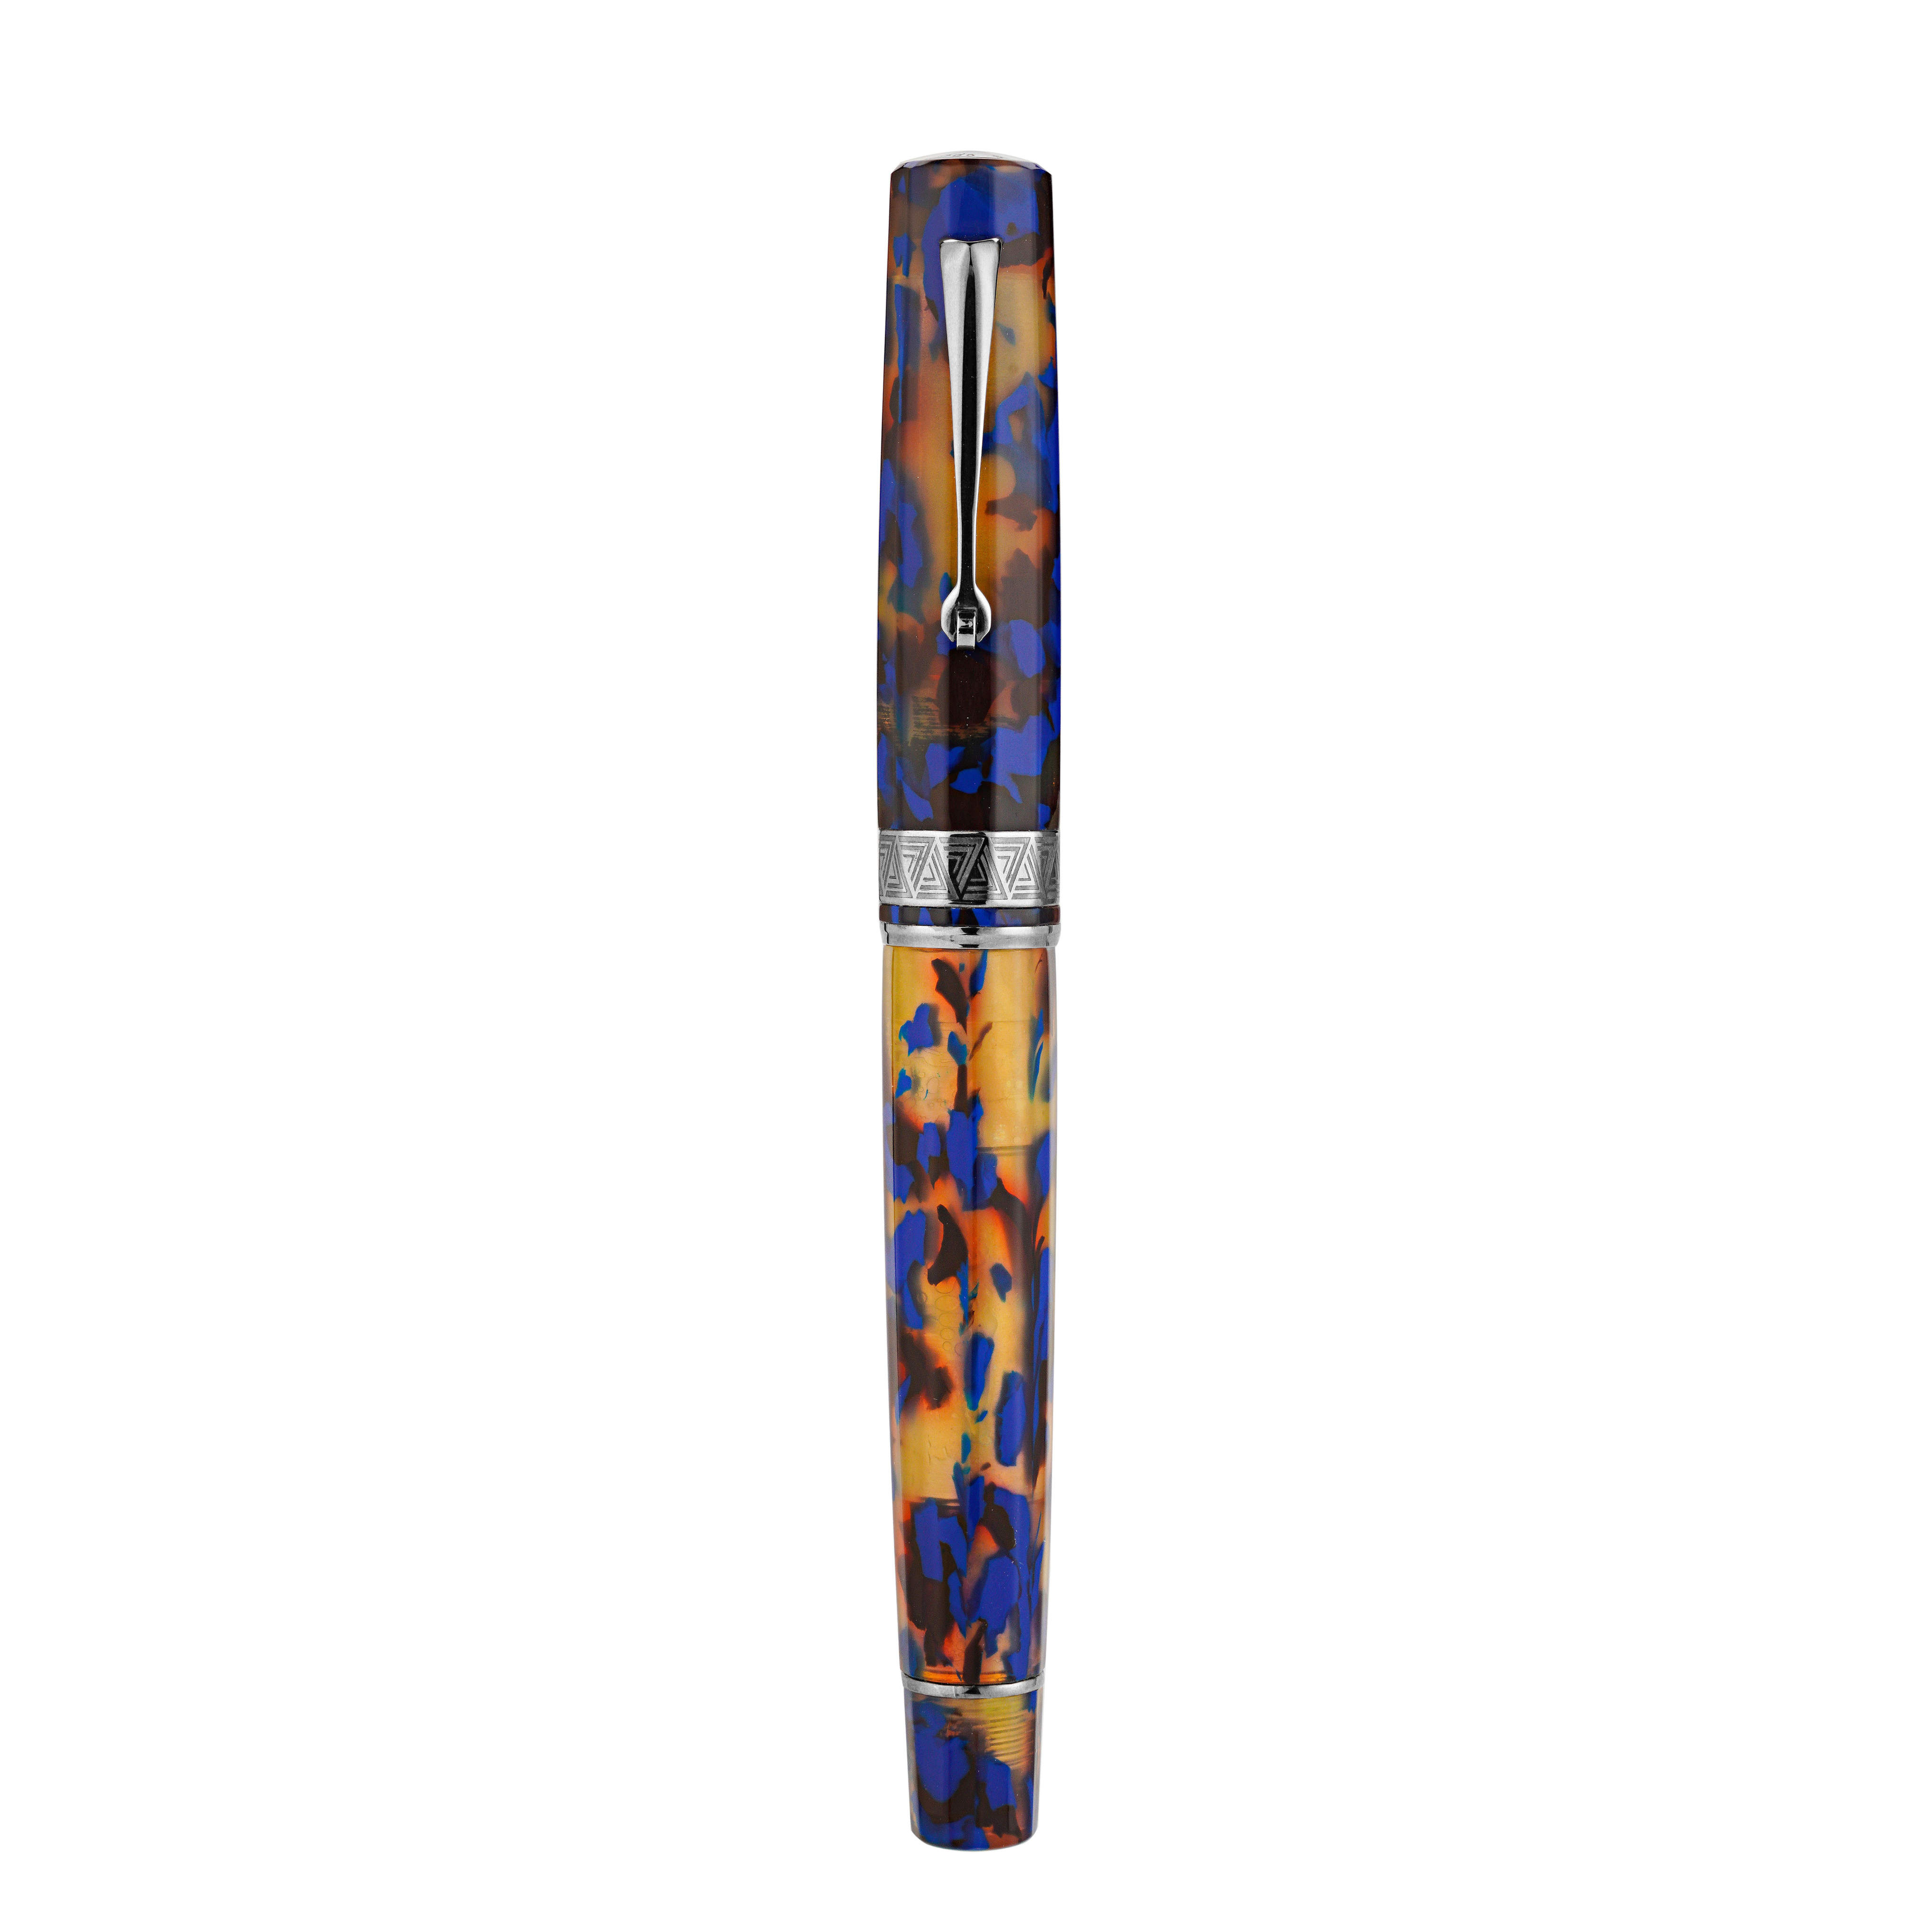 OMAS Paragon Fountain Pen in Blue Lucen with Silver Trim